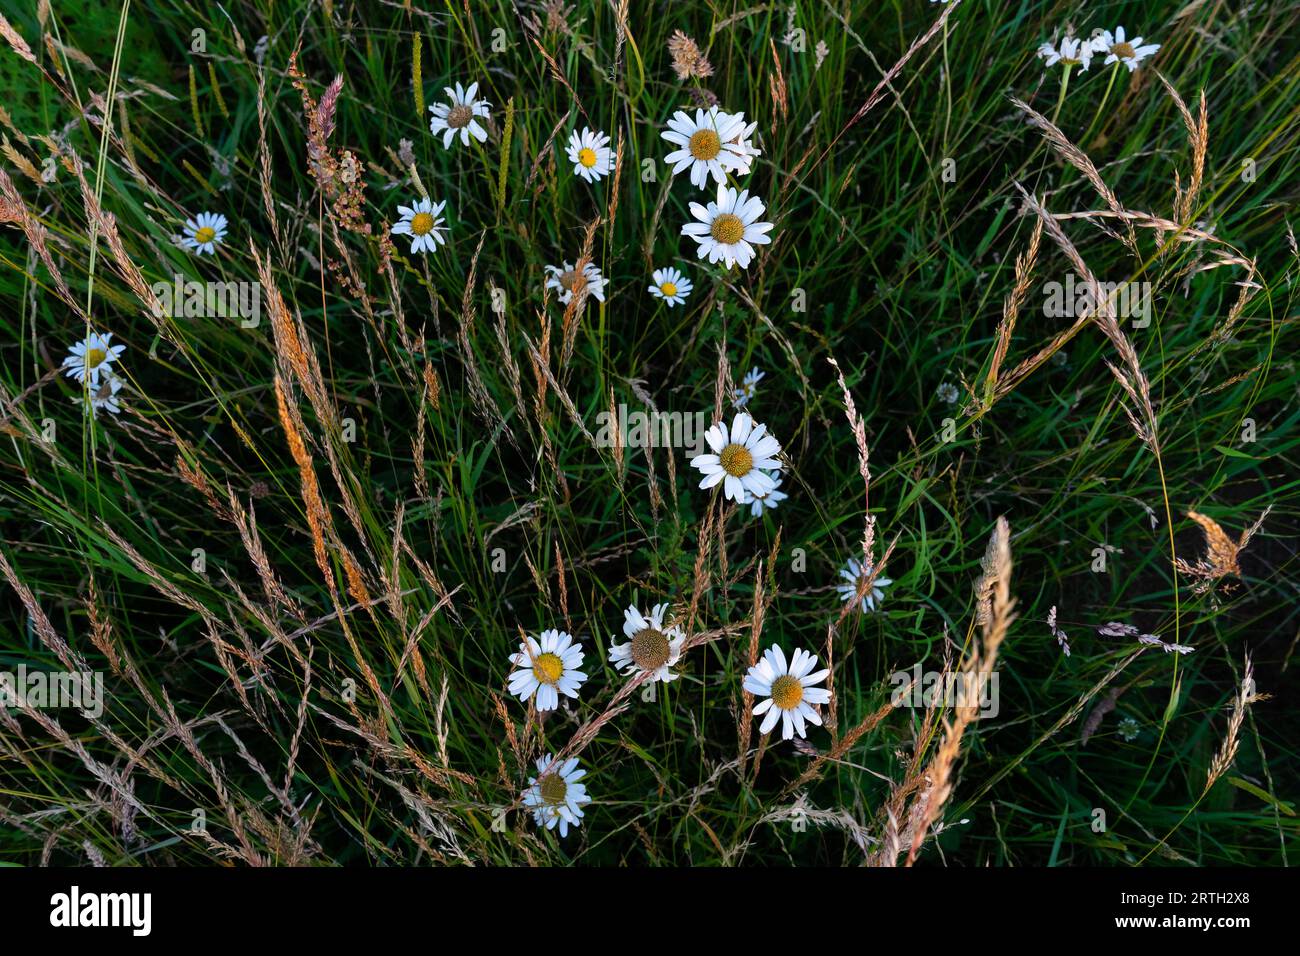 Armonia nella natura: Danze di margherite, grano e erba nella brezza Foto Stock